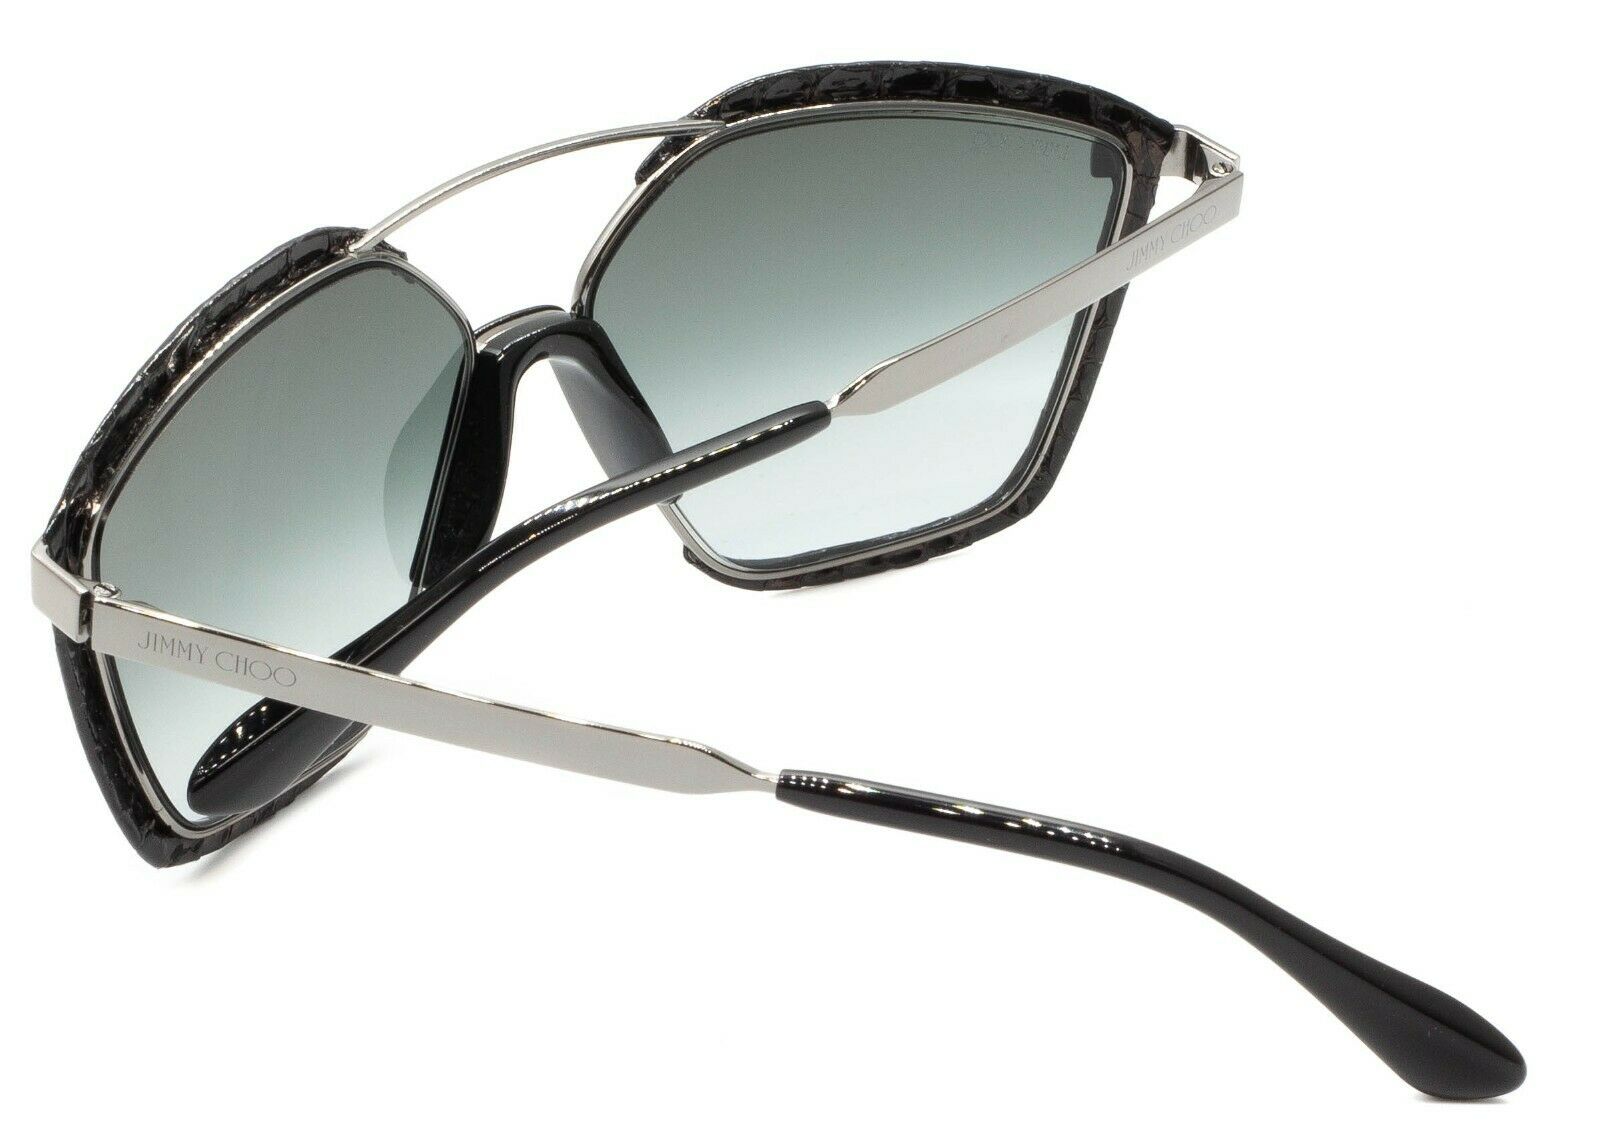 JIMMY CHOO LEON/S 8079O 61mm Sunglasses Shades Frames Eyewear New BNIB - ITALY